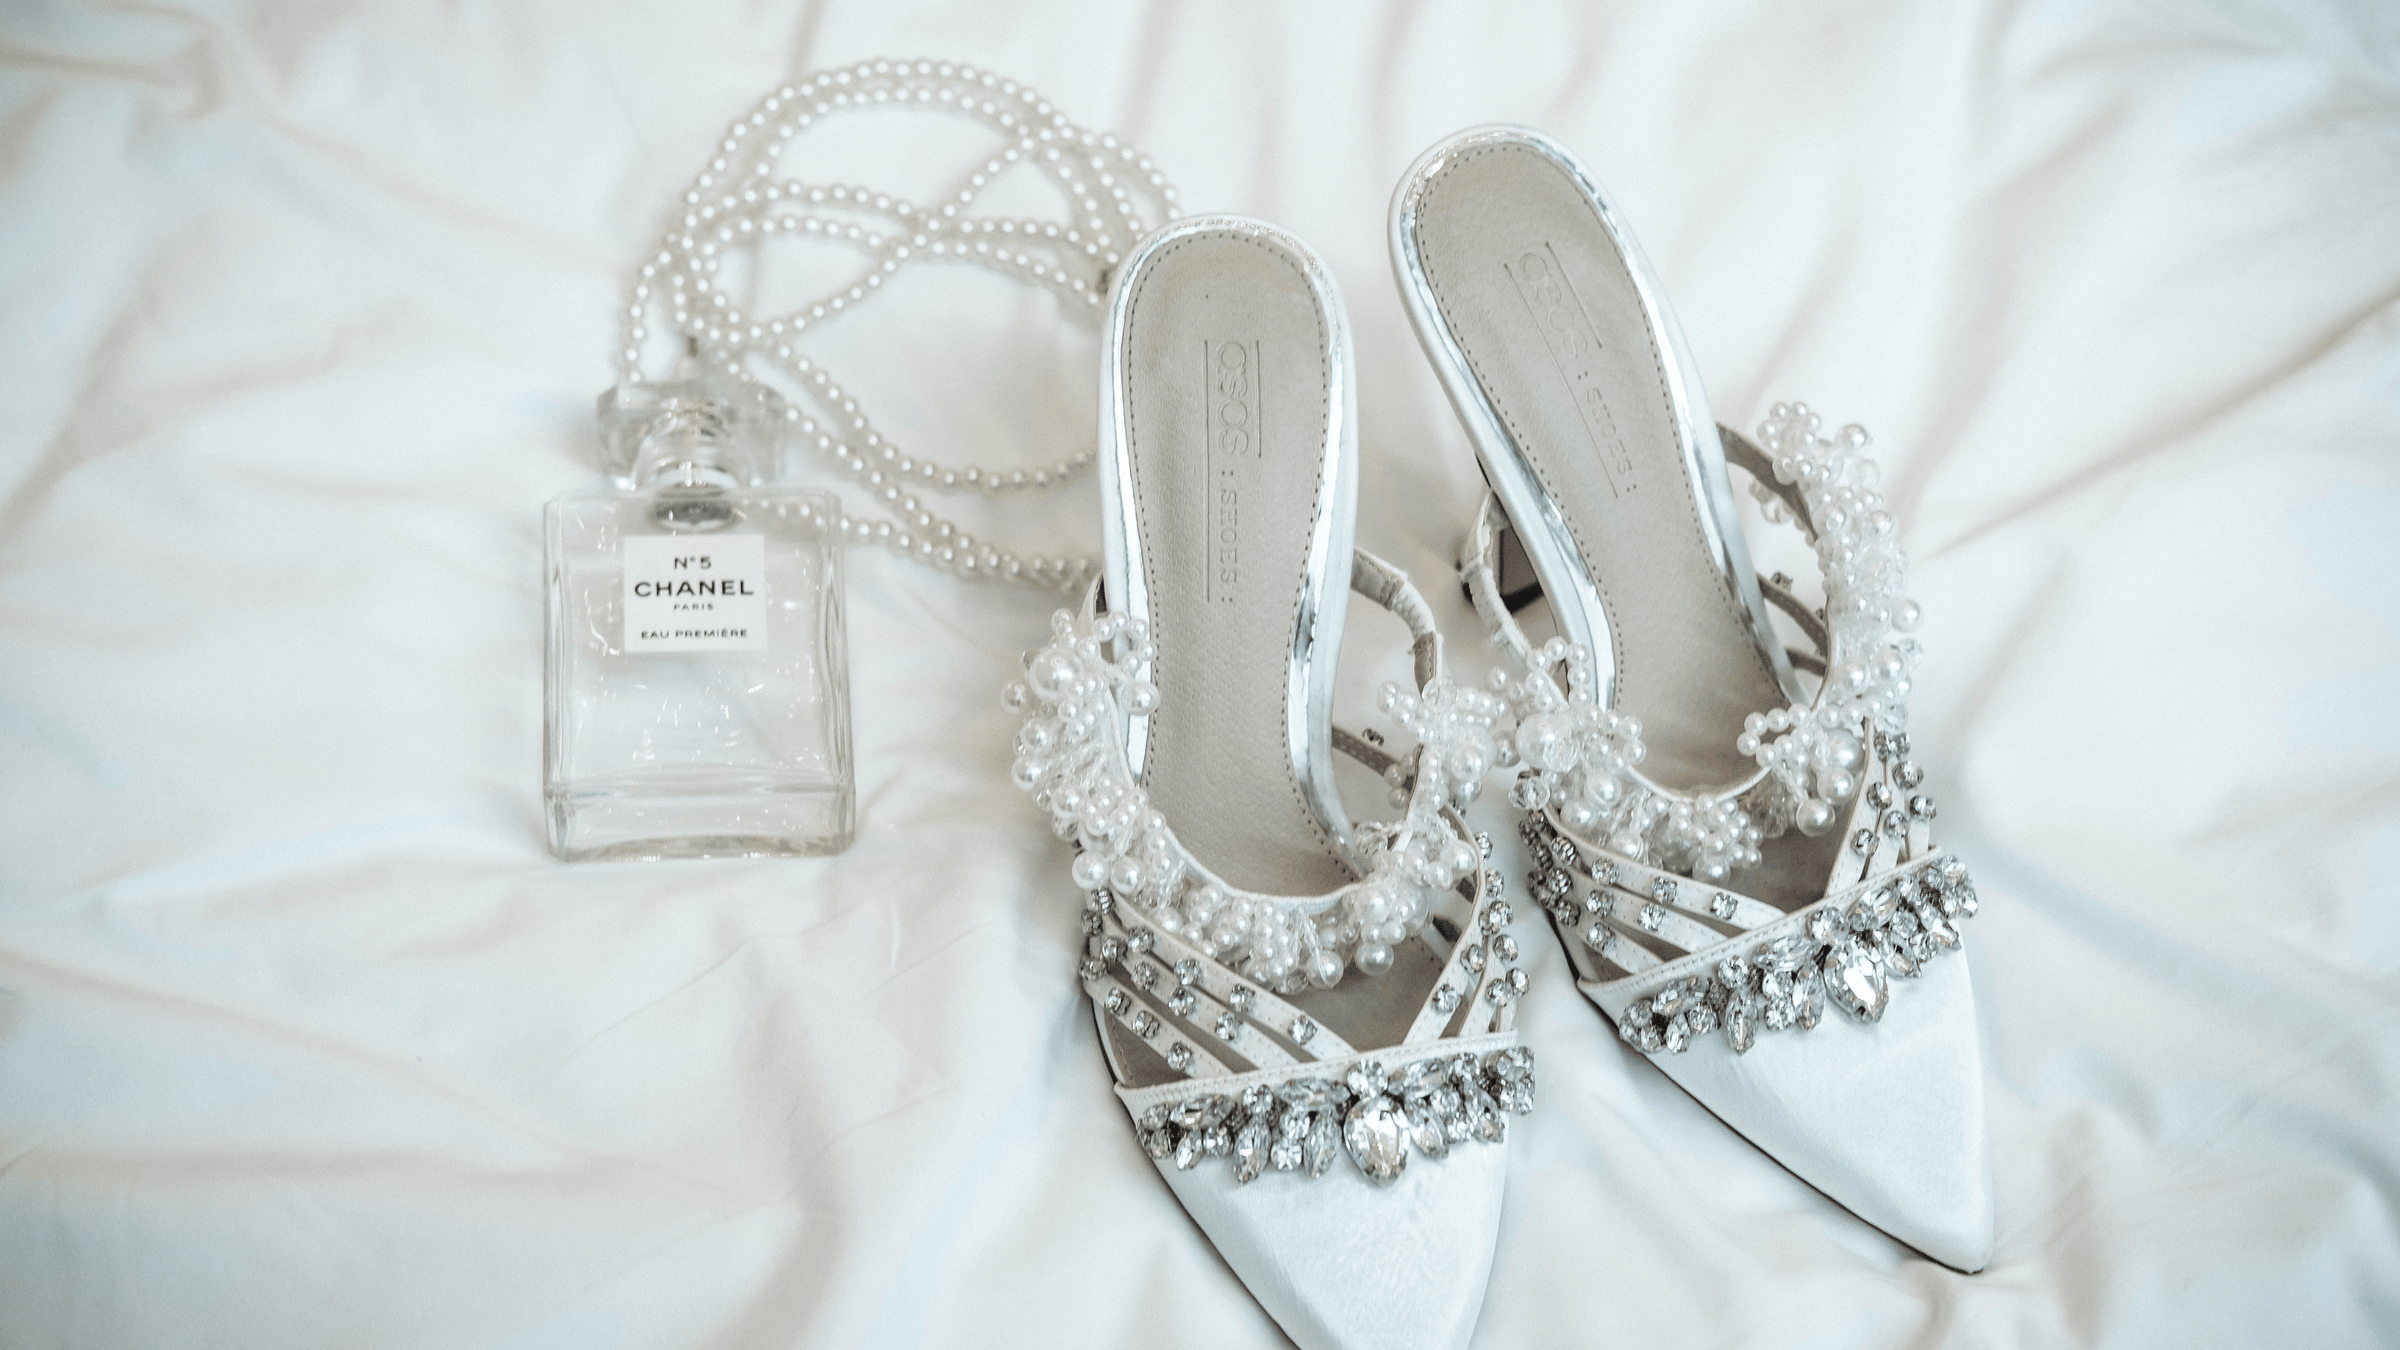 Damparfym och skor från Chanel